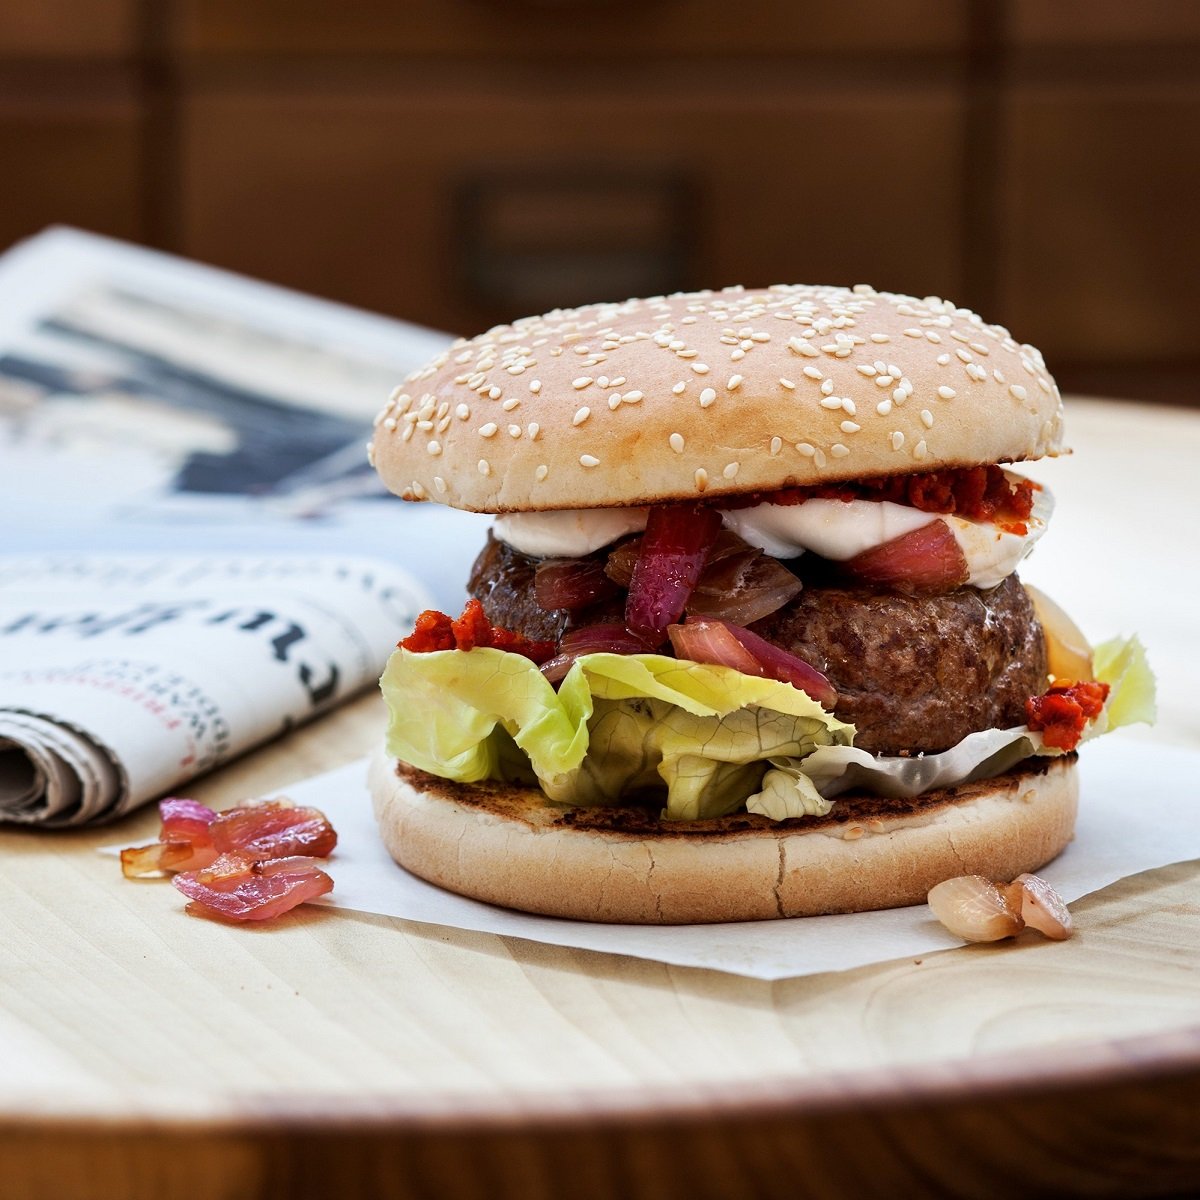 Hamburger perfetto: le 5 regole per prepararlo al top - Sale&Pepe